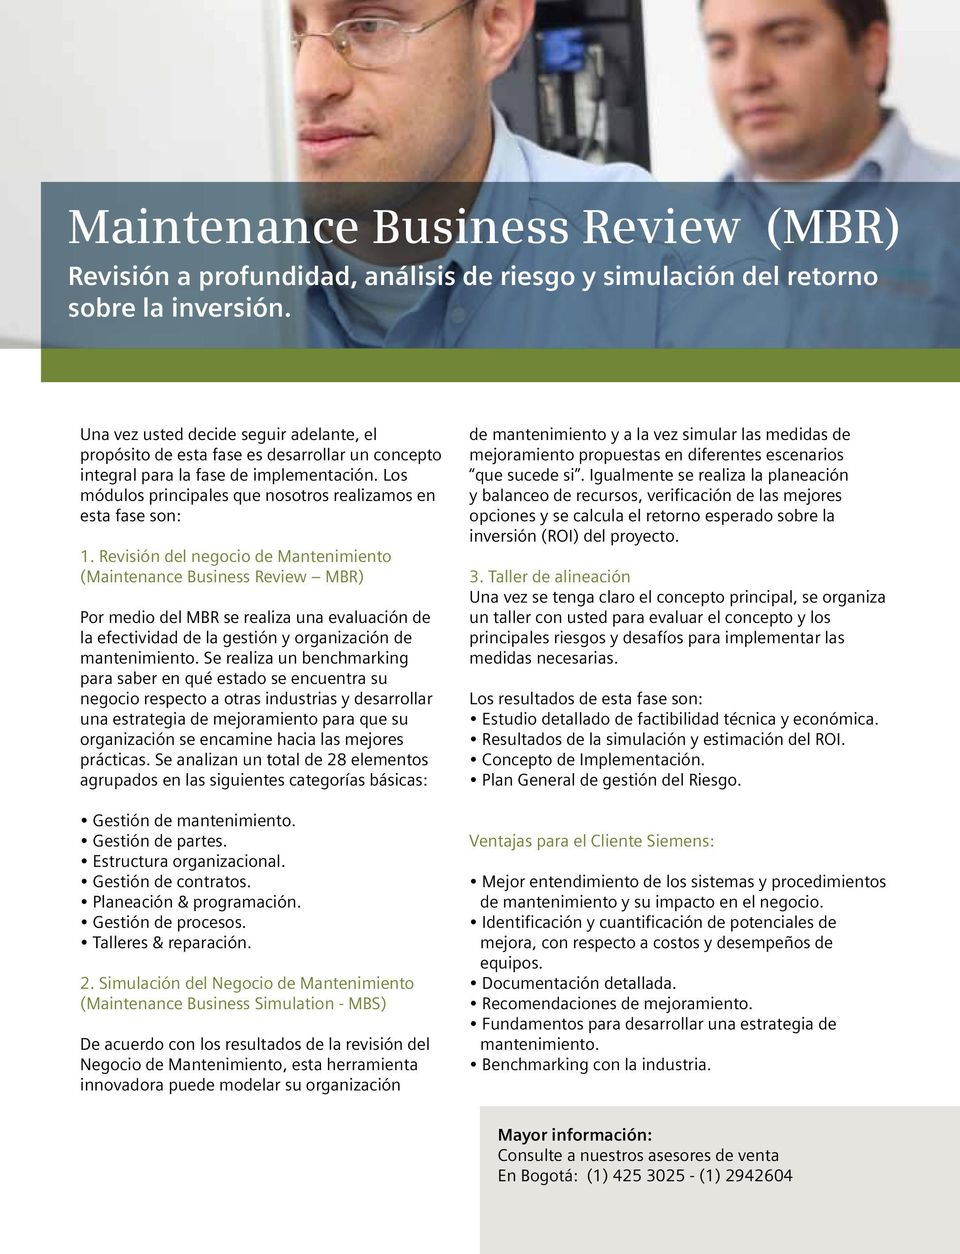 Revisión del negocio de Mantenimiento (Maintenance Business Review MBR) Por medio del MBR se realiza una evaluación de la efectividad de la gestión y organización de mantenimiento.